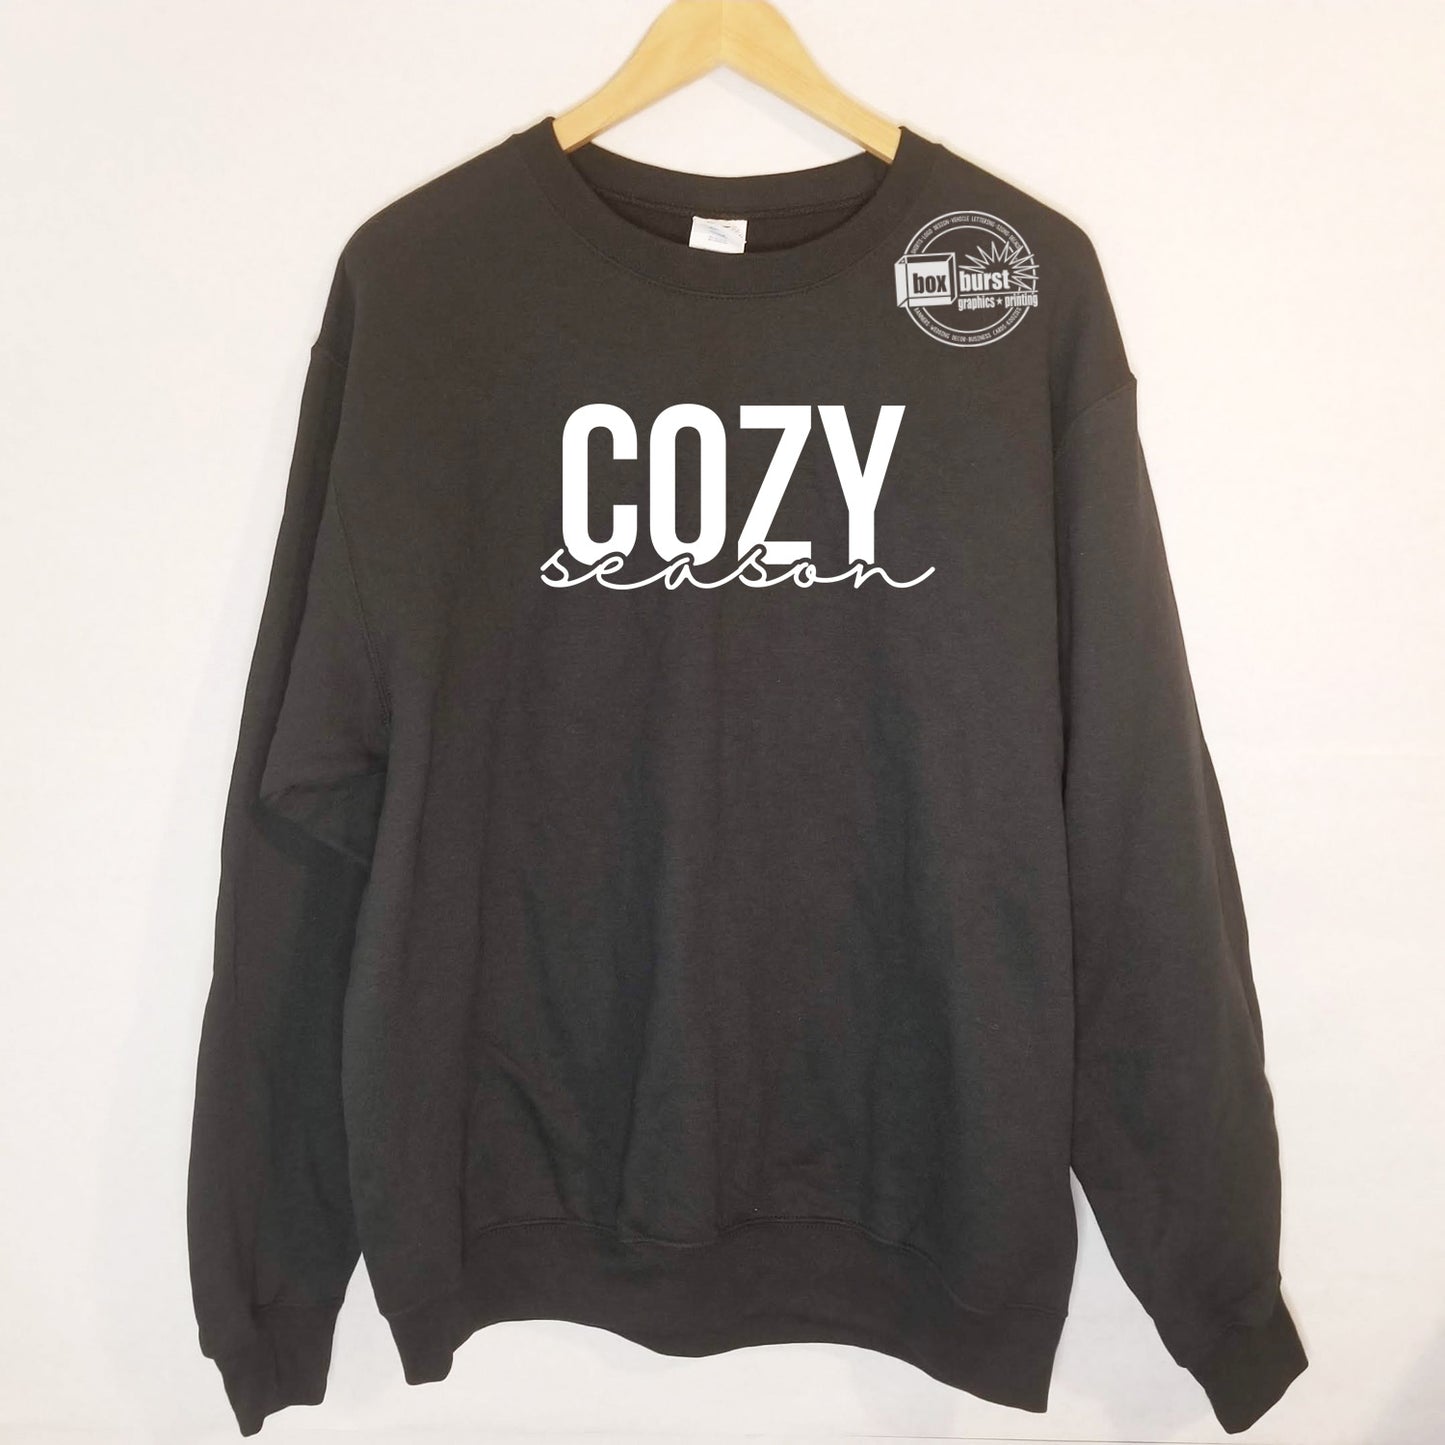 Cozy Season Crew neck sweater